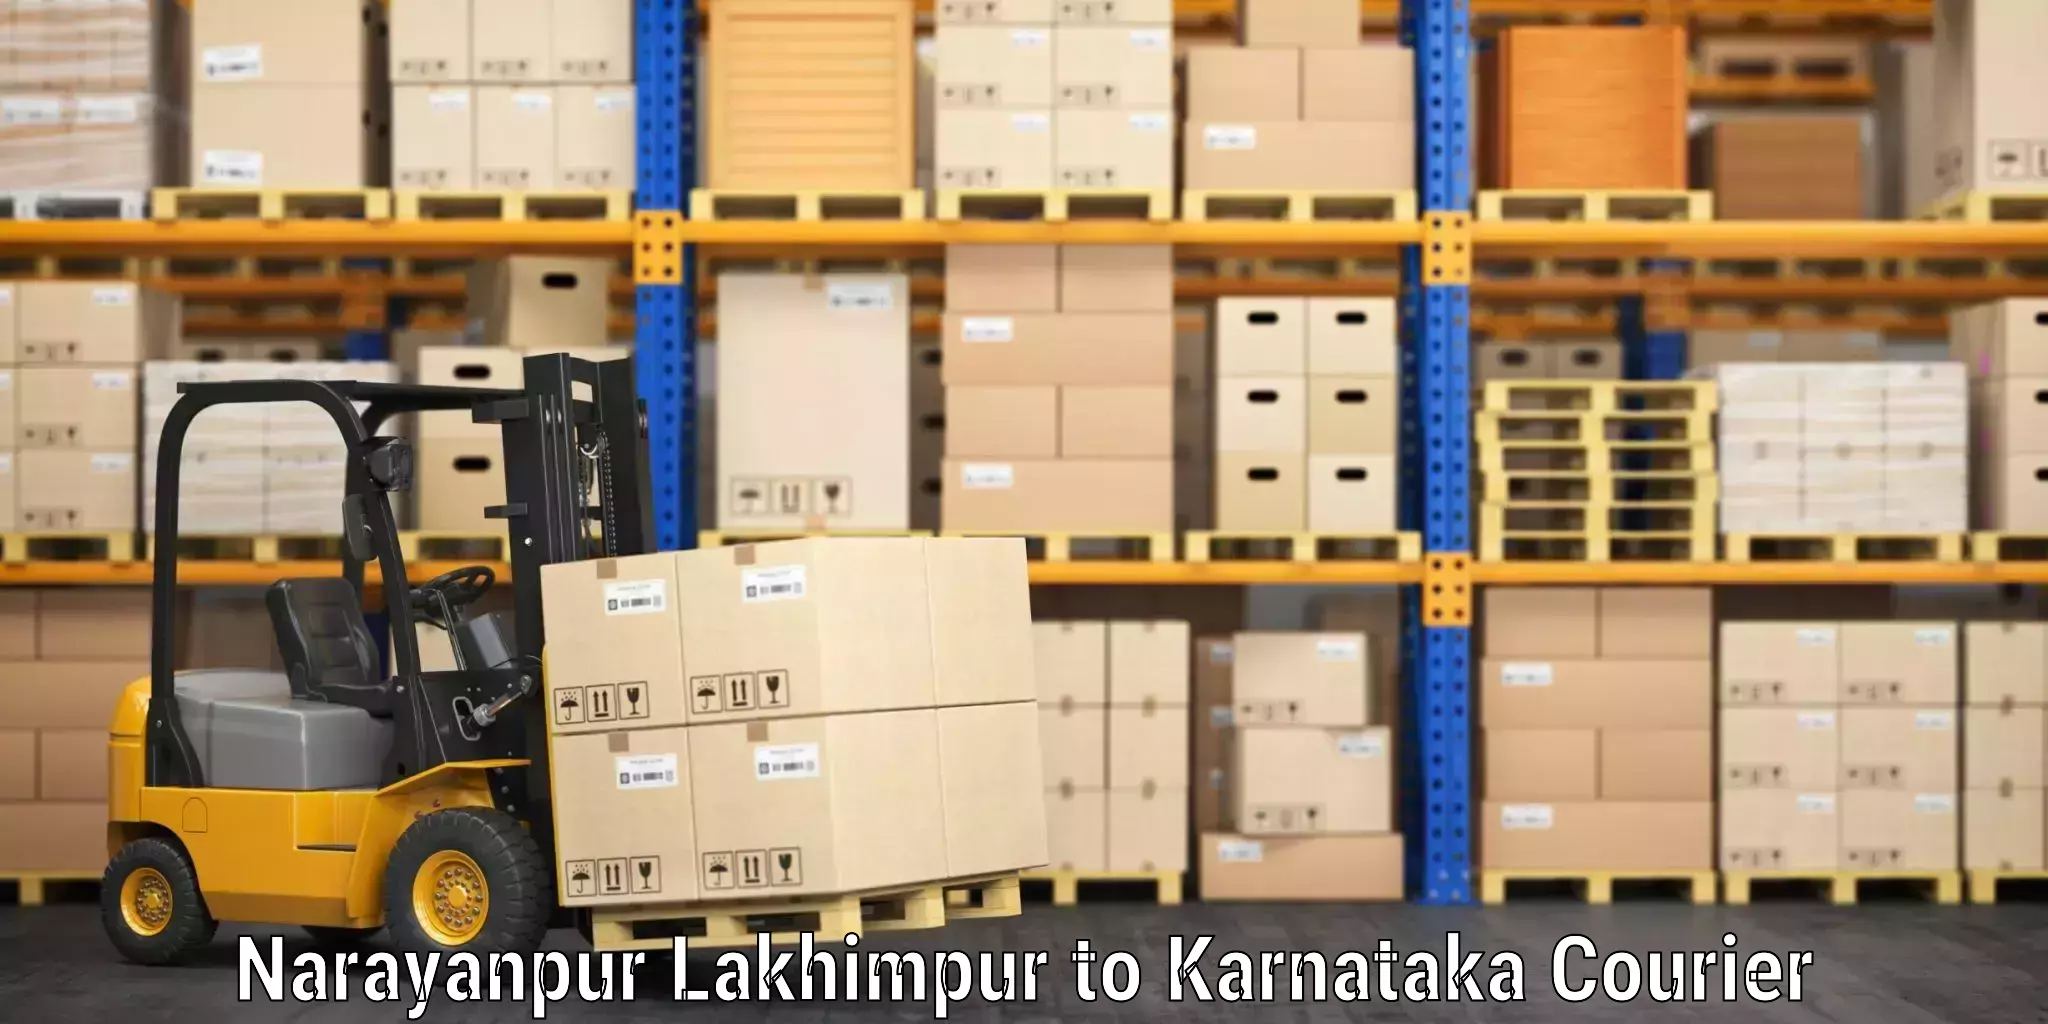 Luggage shipment logistics in Narayanpur Lakhimpur to Deodurga